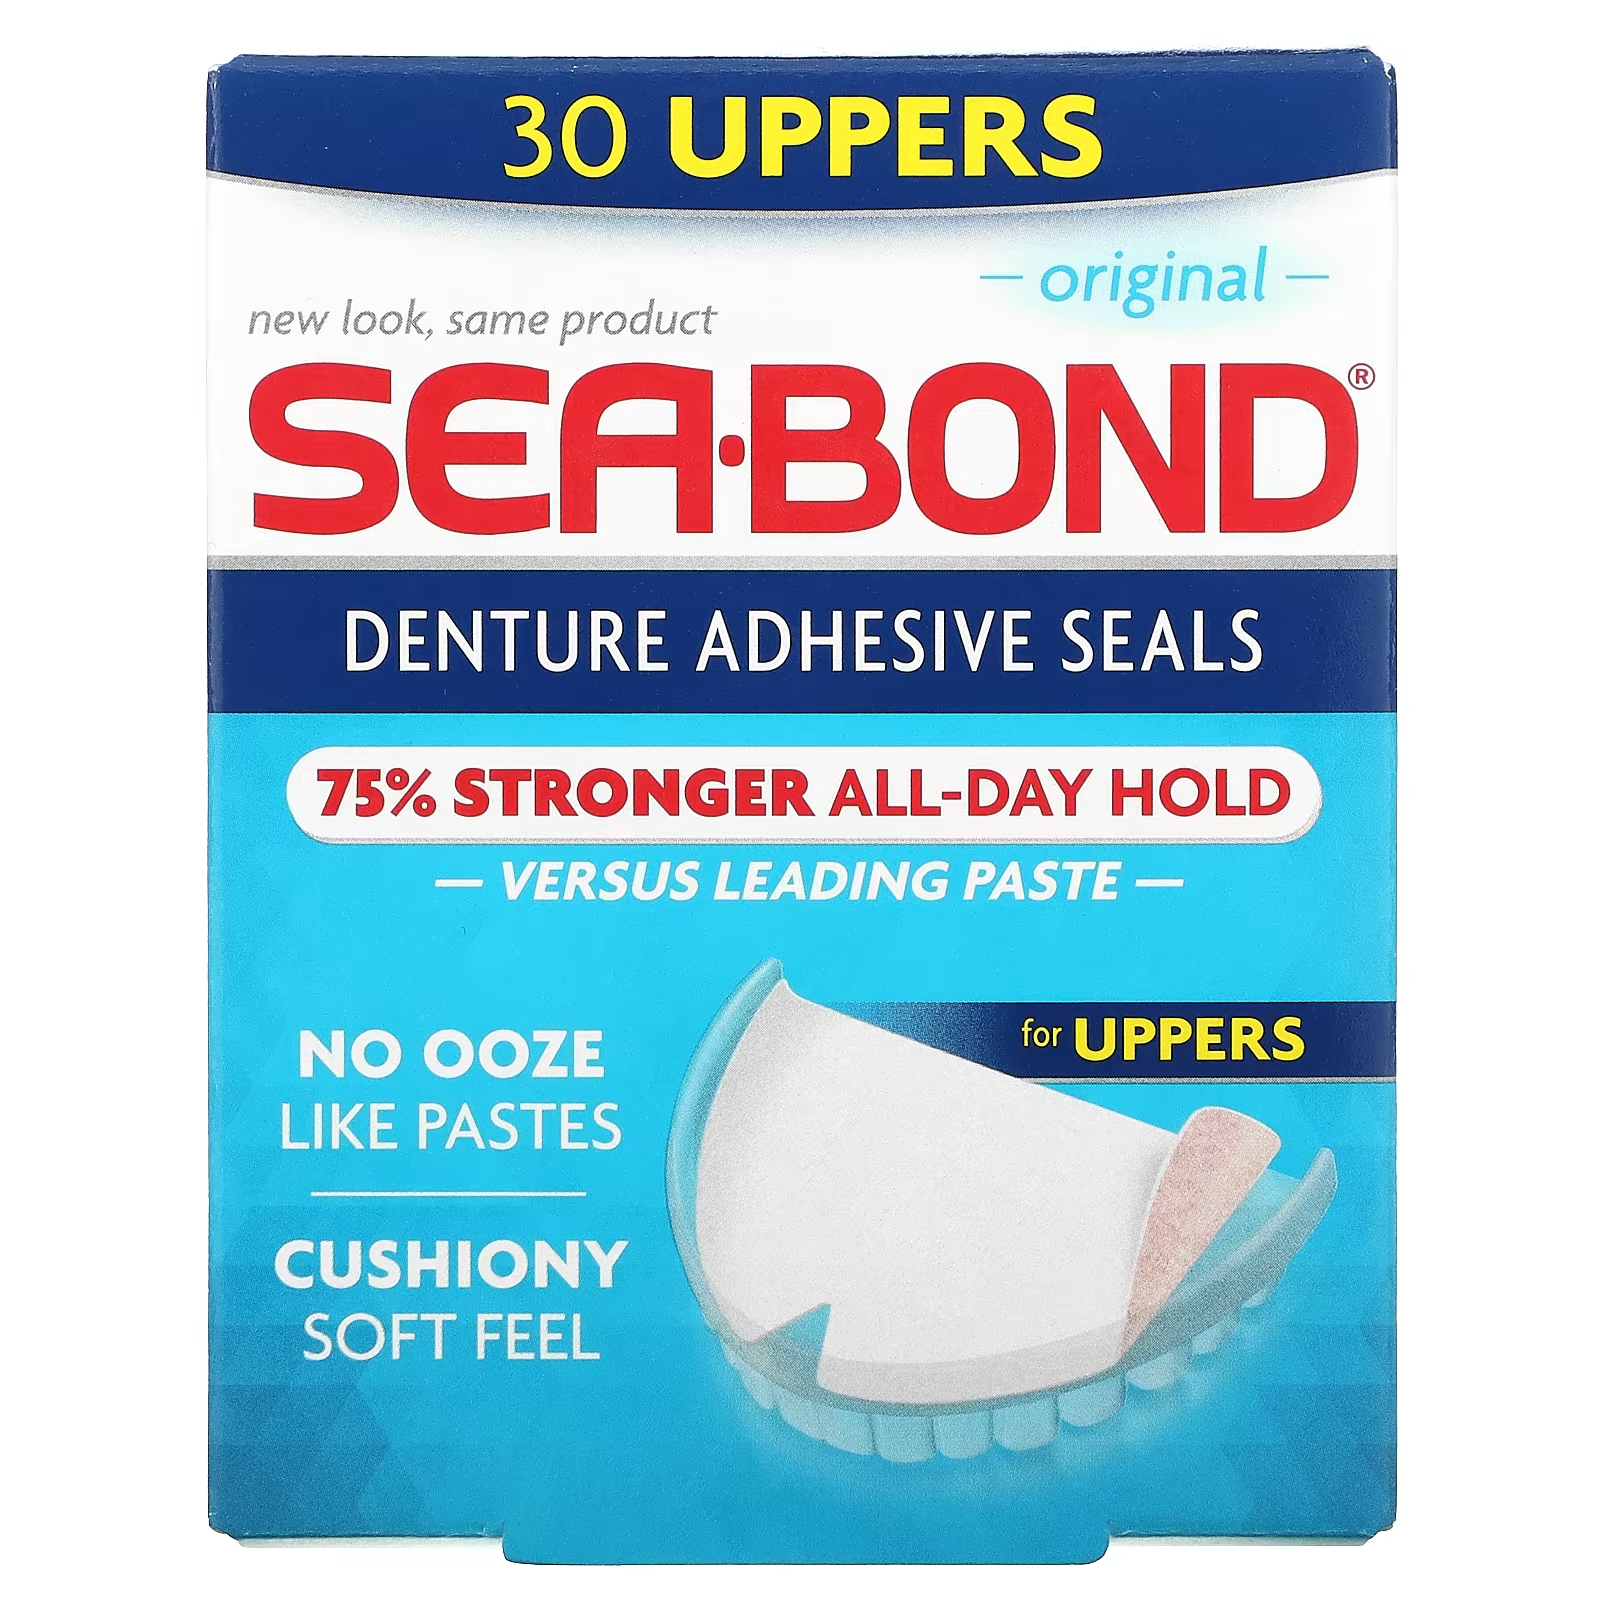 цена Клейкие пломбы Original 30 Uppers SeaBond для зубных протезов